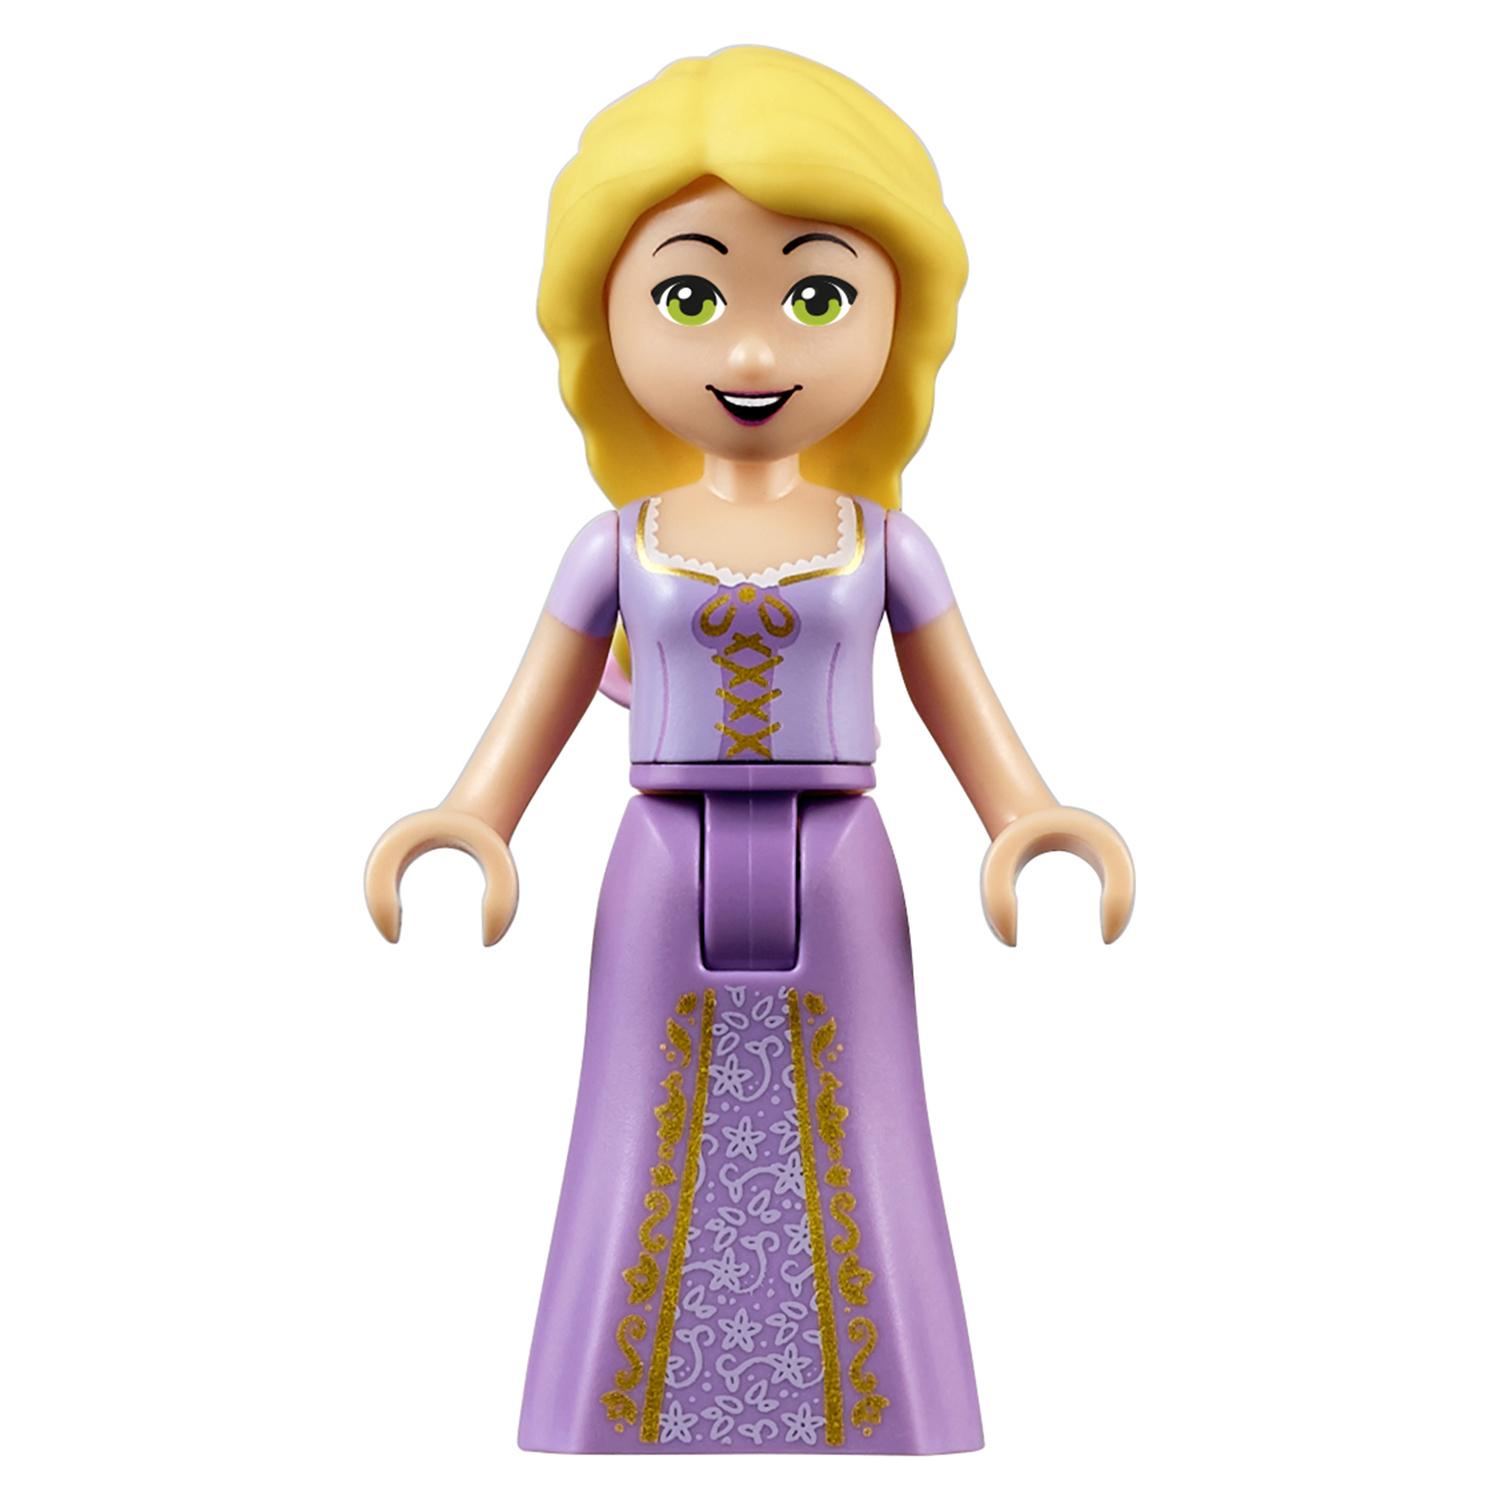 Lego Disney Princess 41065 Лучший день Рапунцель